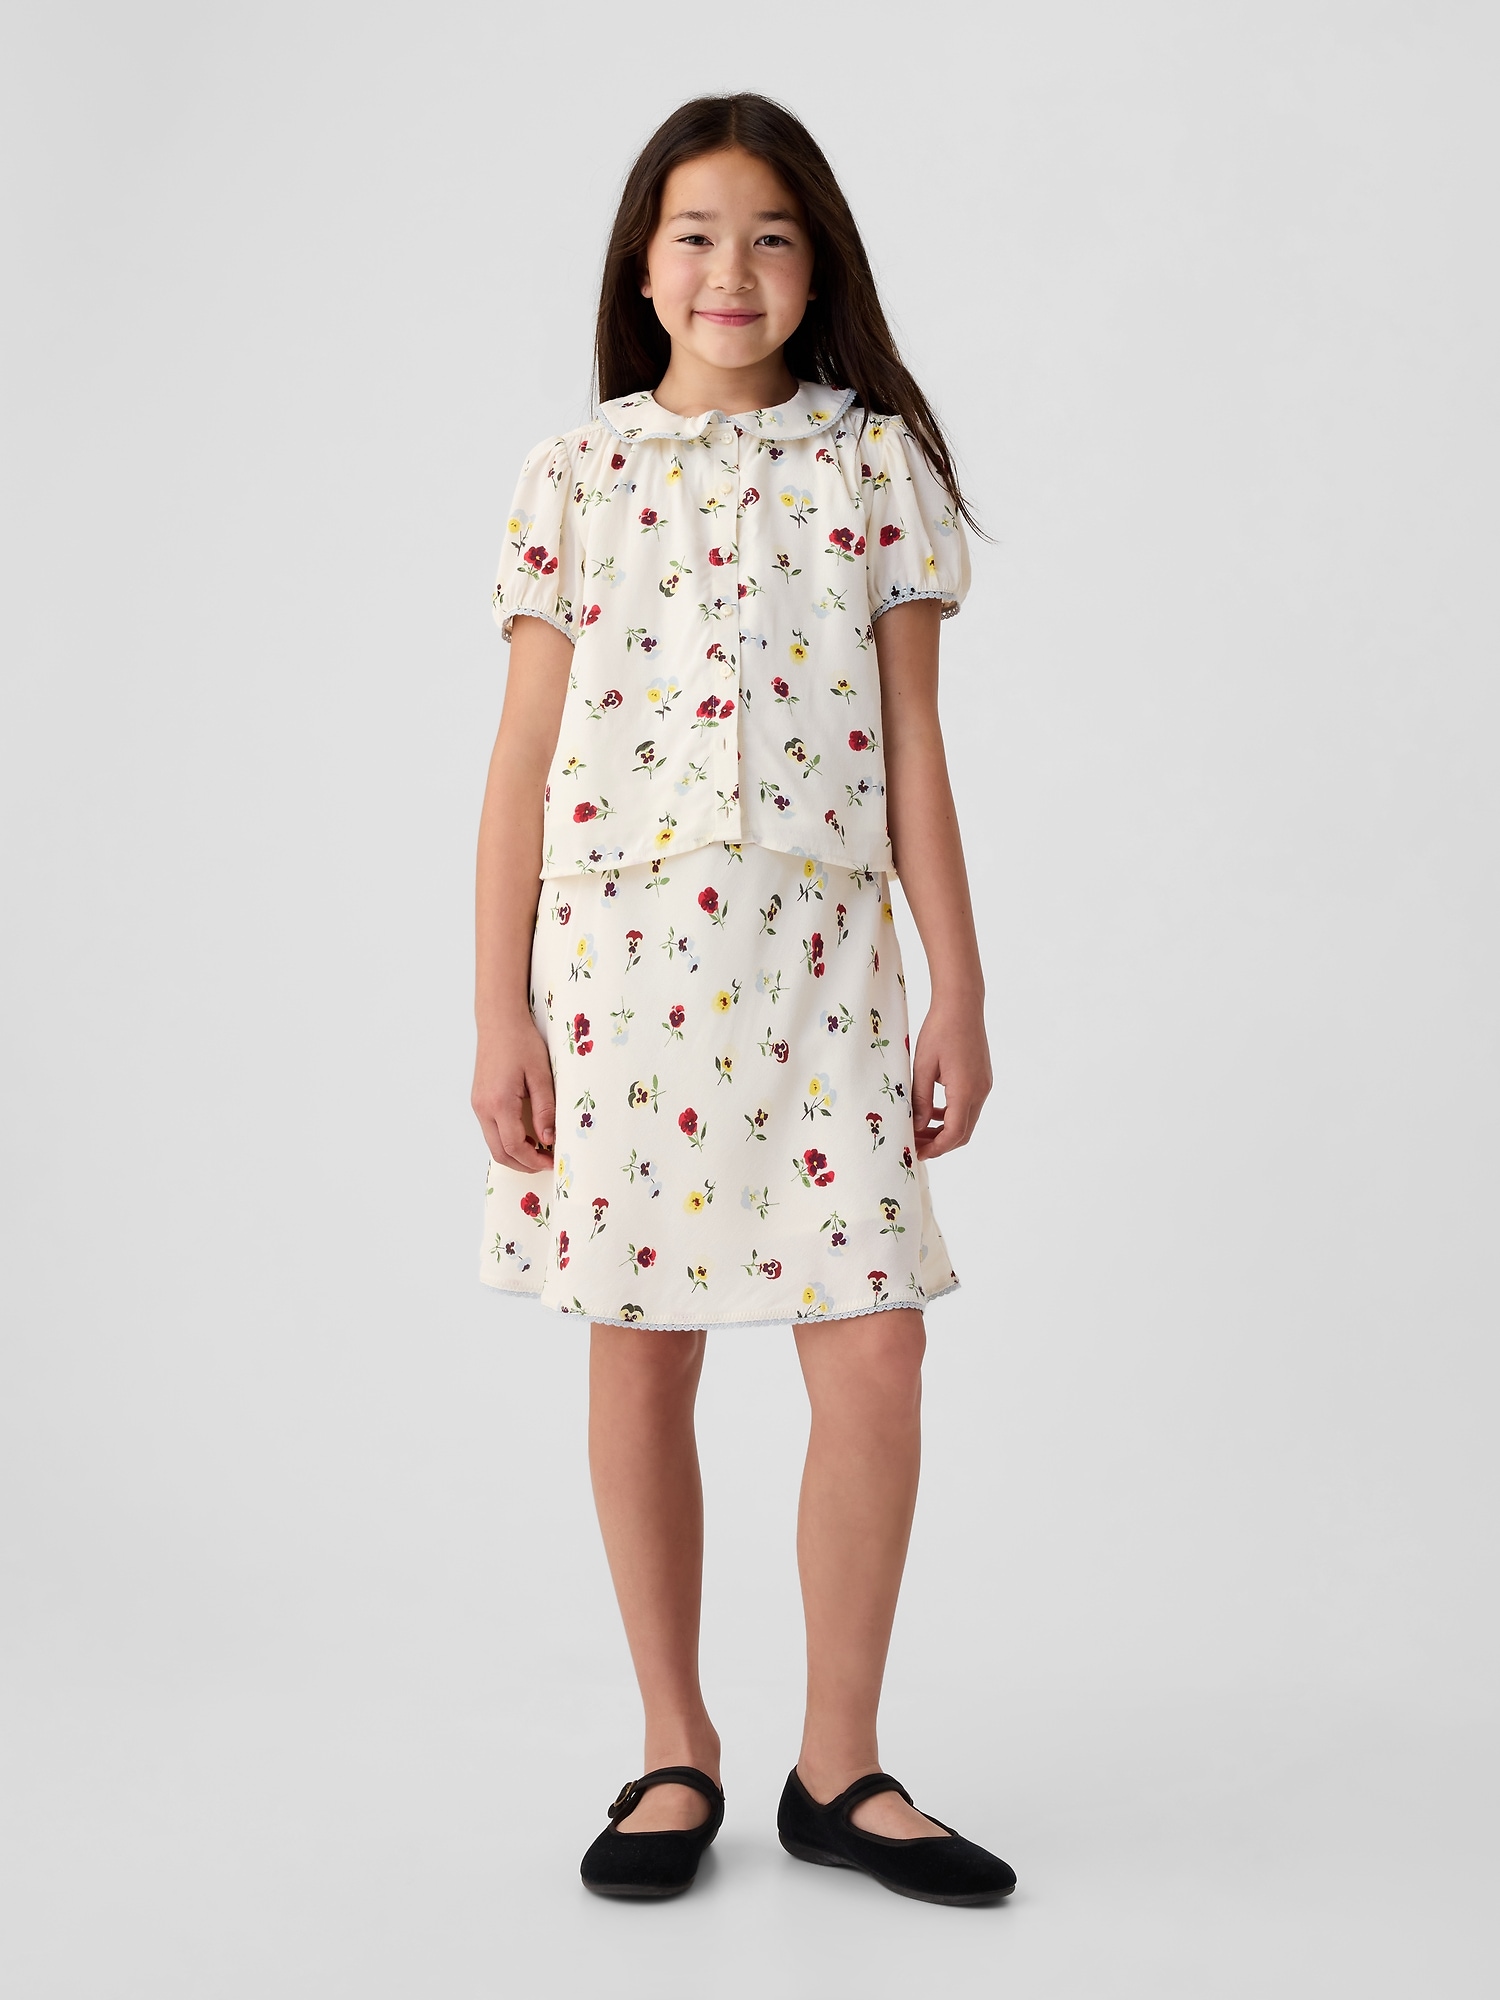 Gap × DÔEN Kids Floral Skirt